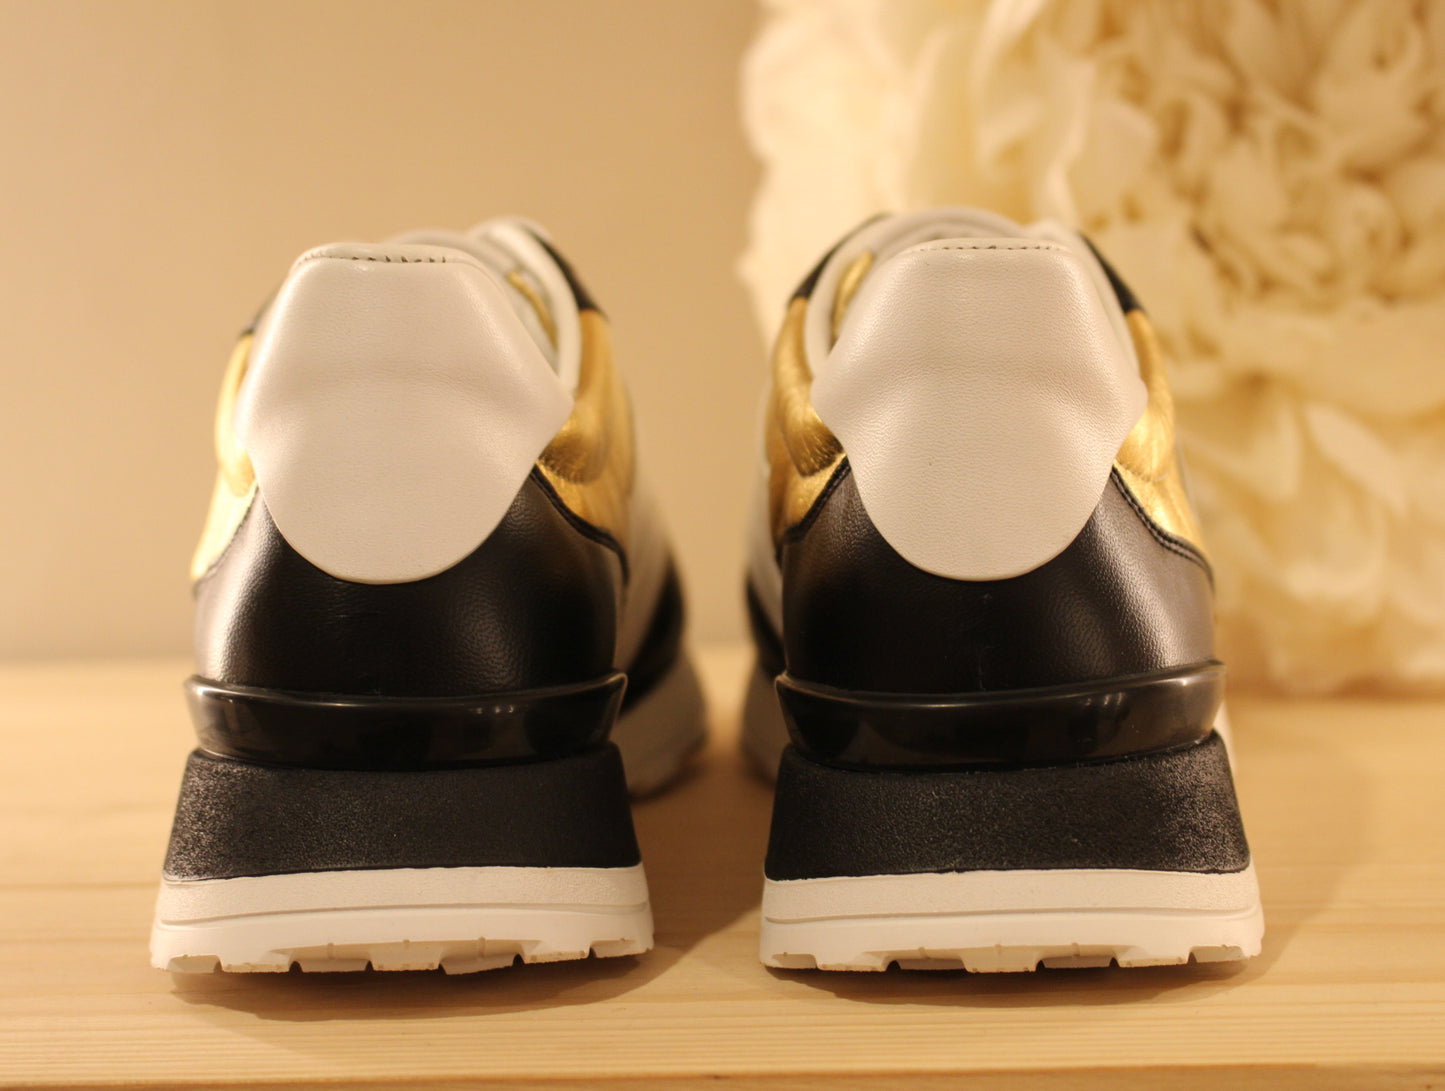 Chaussures HÖGL en cuir métallisé noir et blanc Fabrication autrichienne